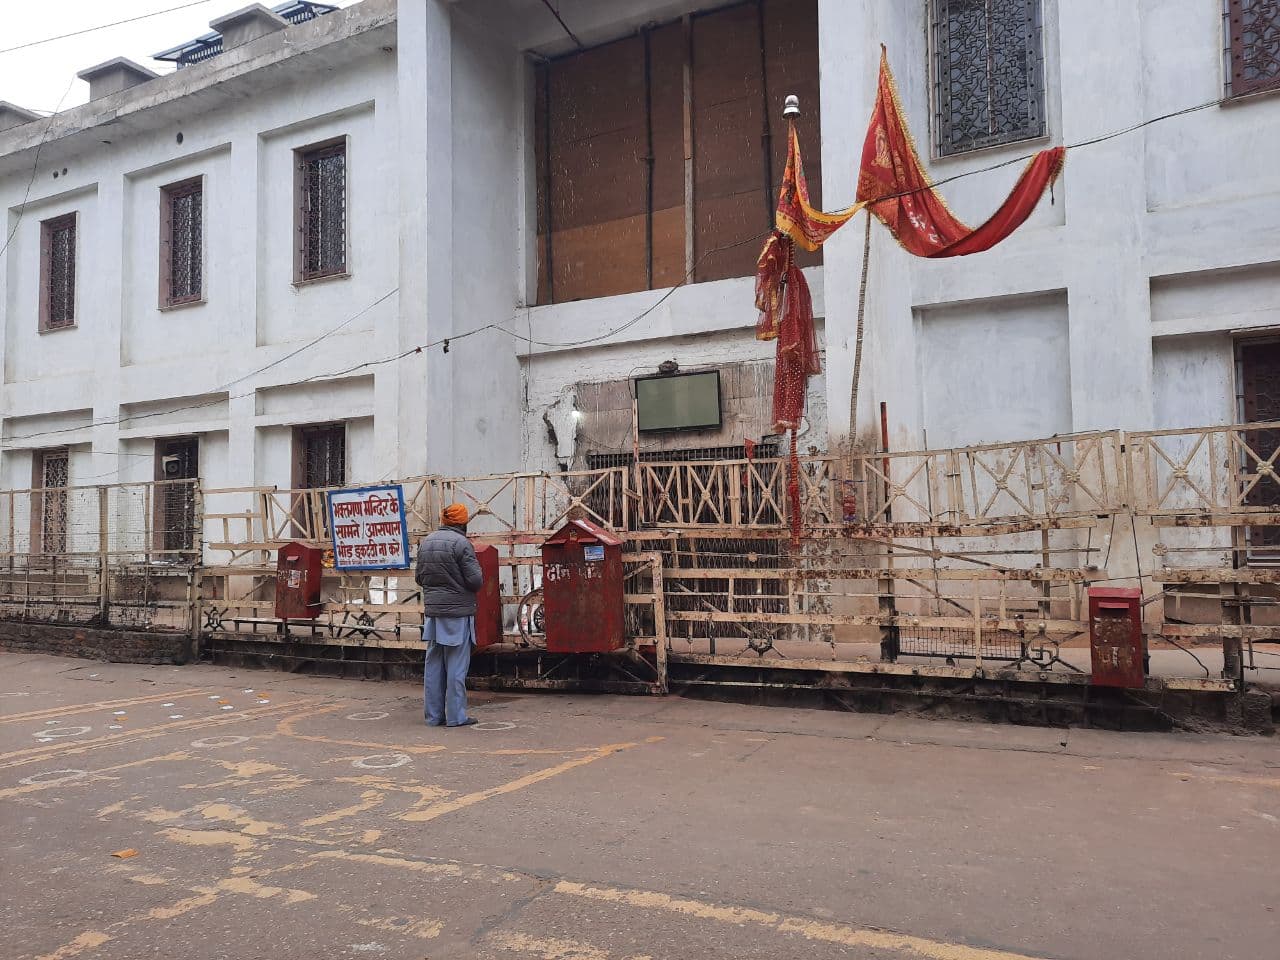 मेहंदीपुर बालाजी मंदिर के पट बंद होने से व्यापारियों के समक्ष गहराया रोजी-रोटी का संकट